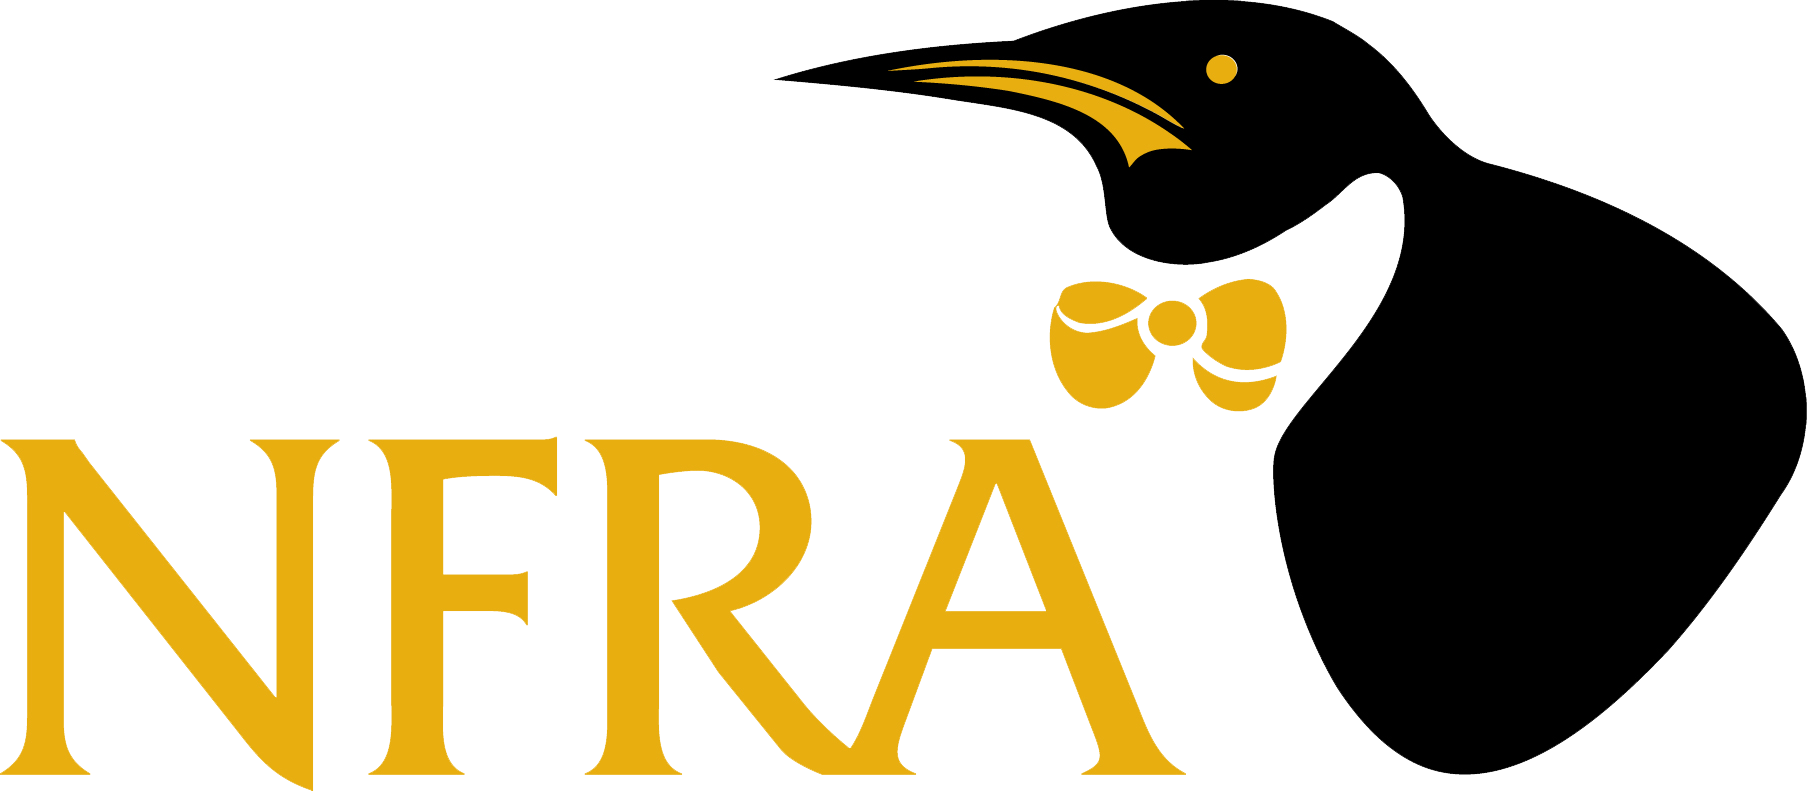 Retail-NFRA-logo